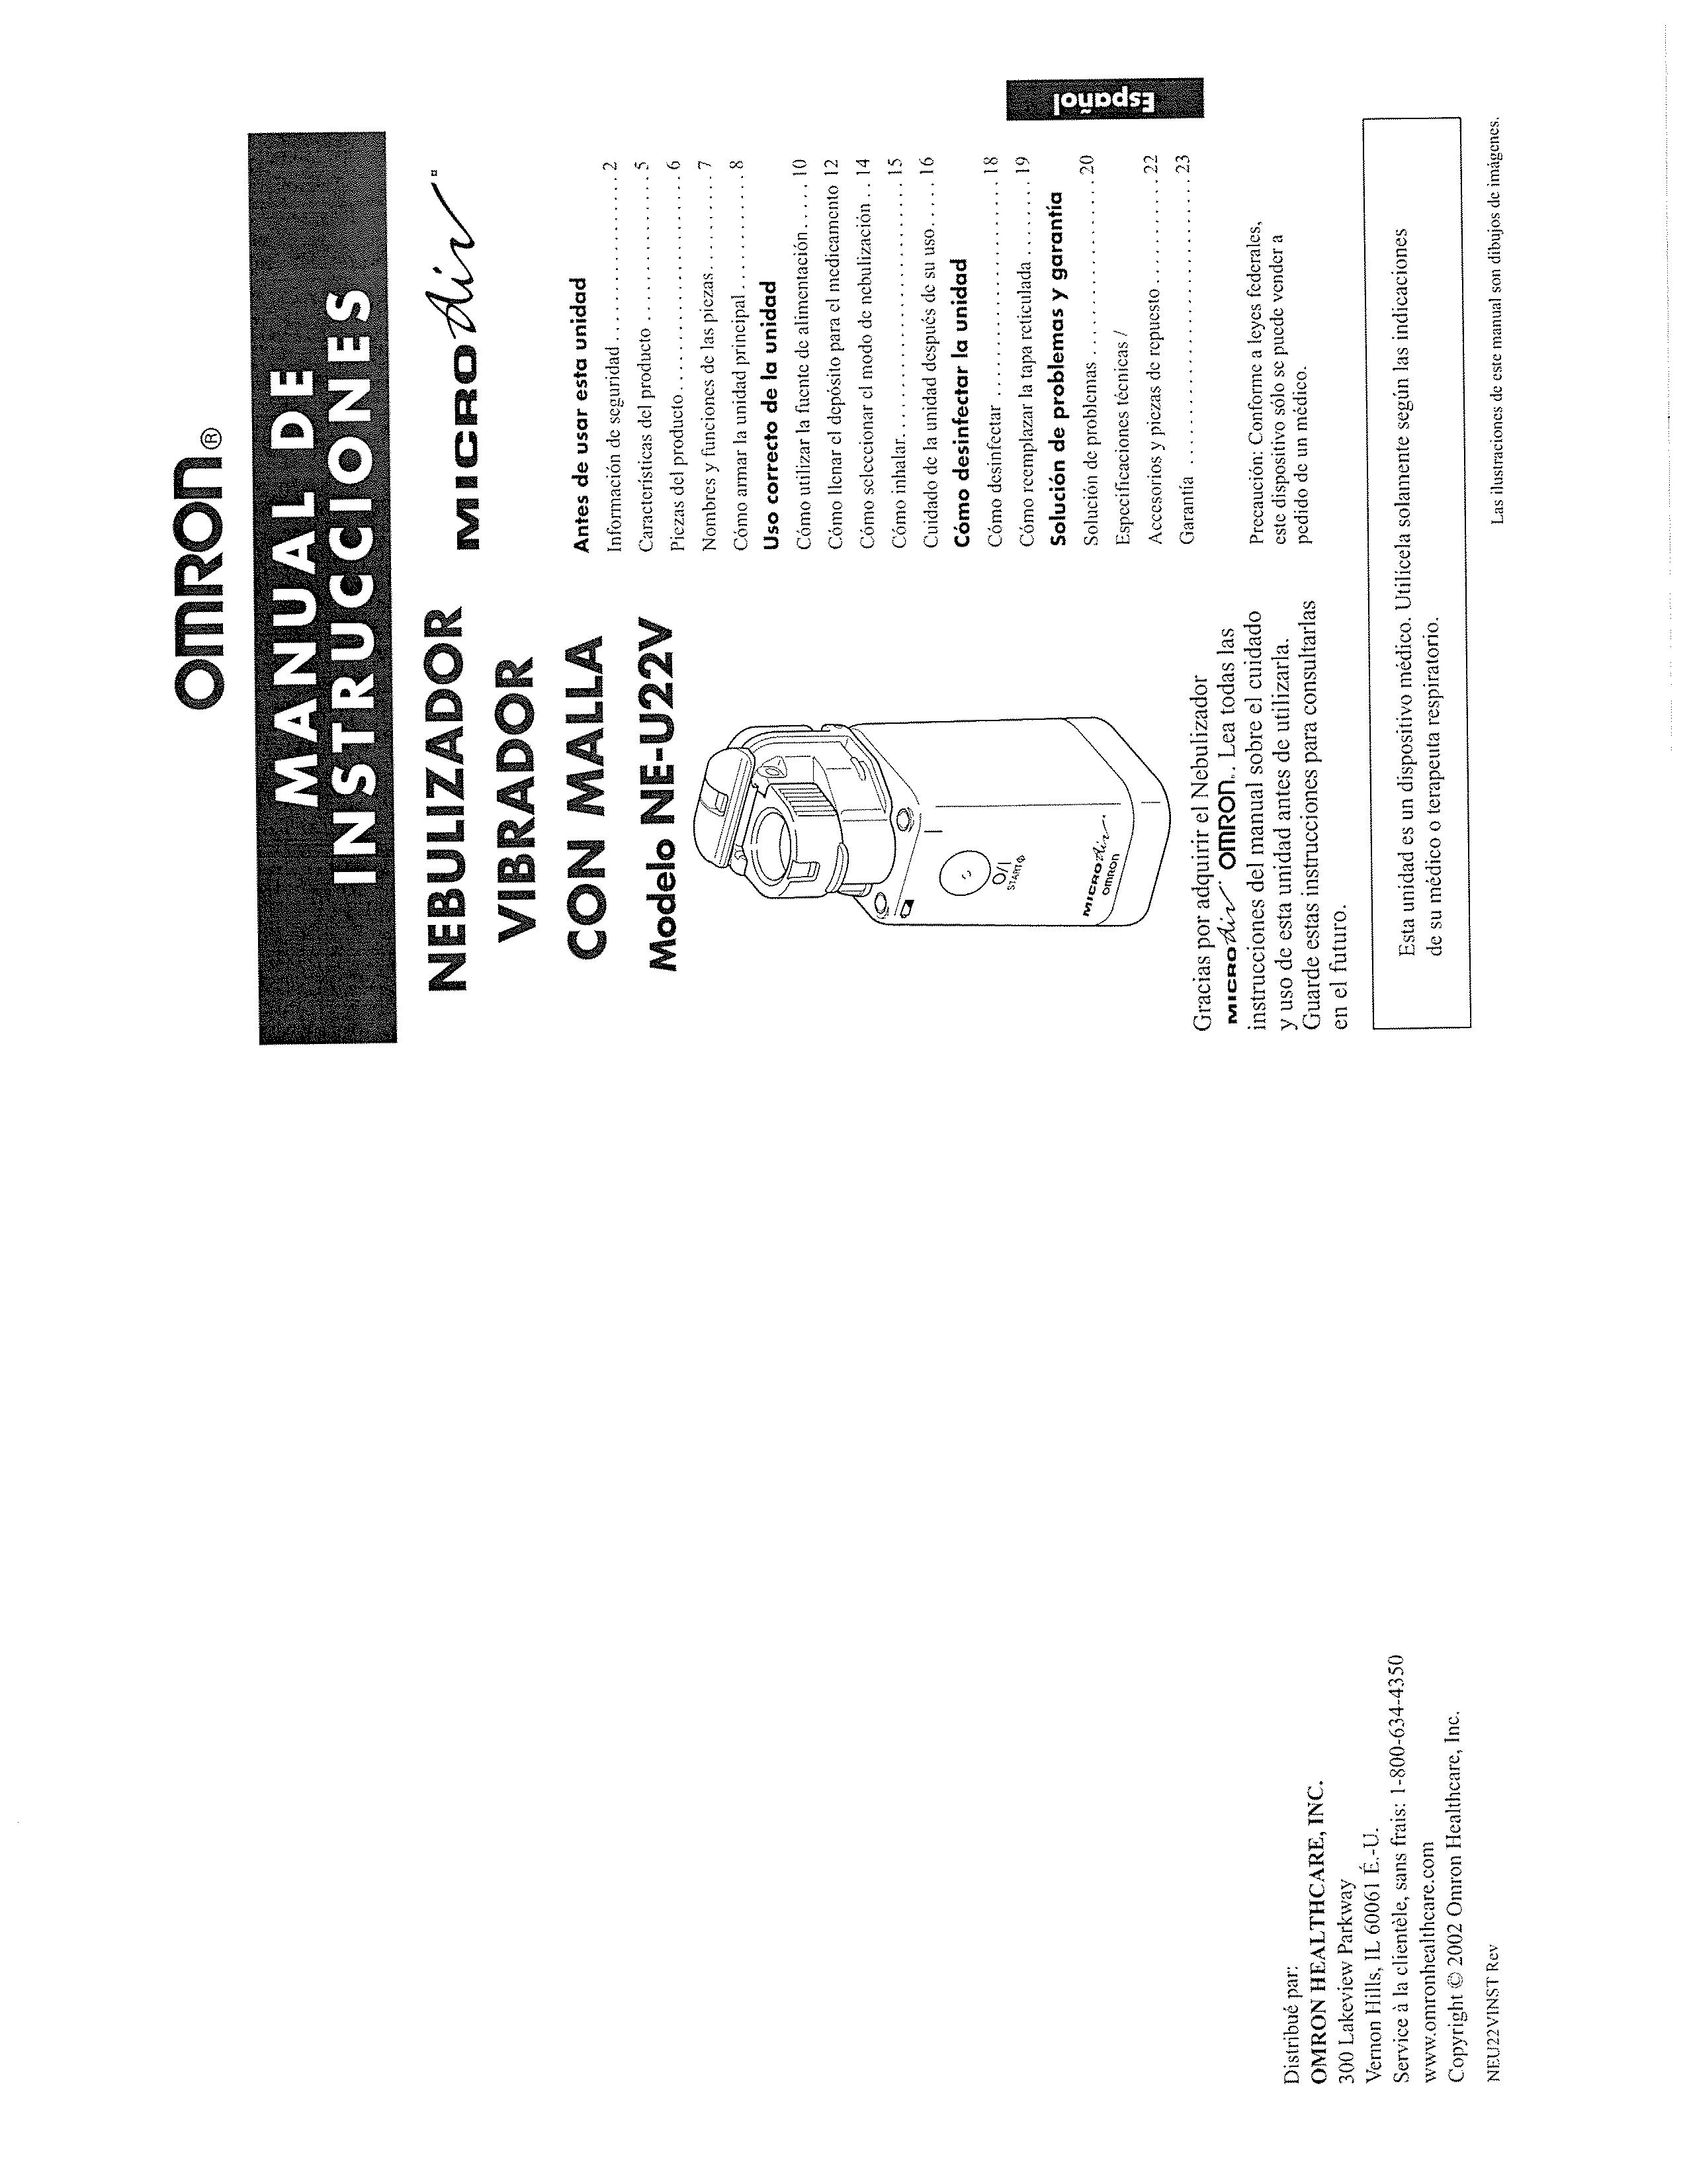 Omron Healthcare NE-U22V Nebulizer User Manual